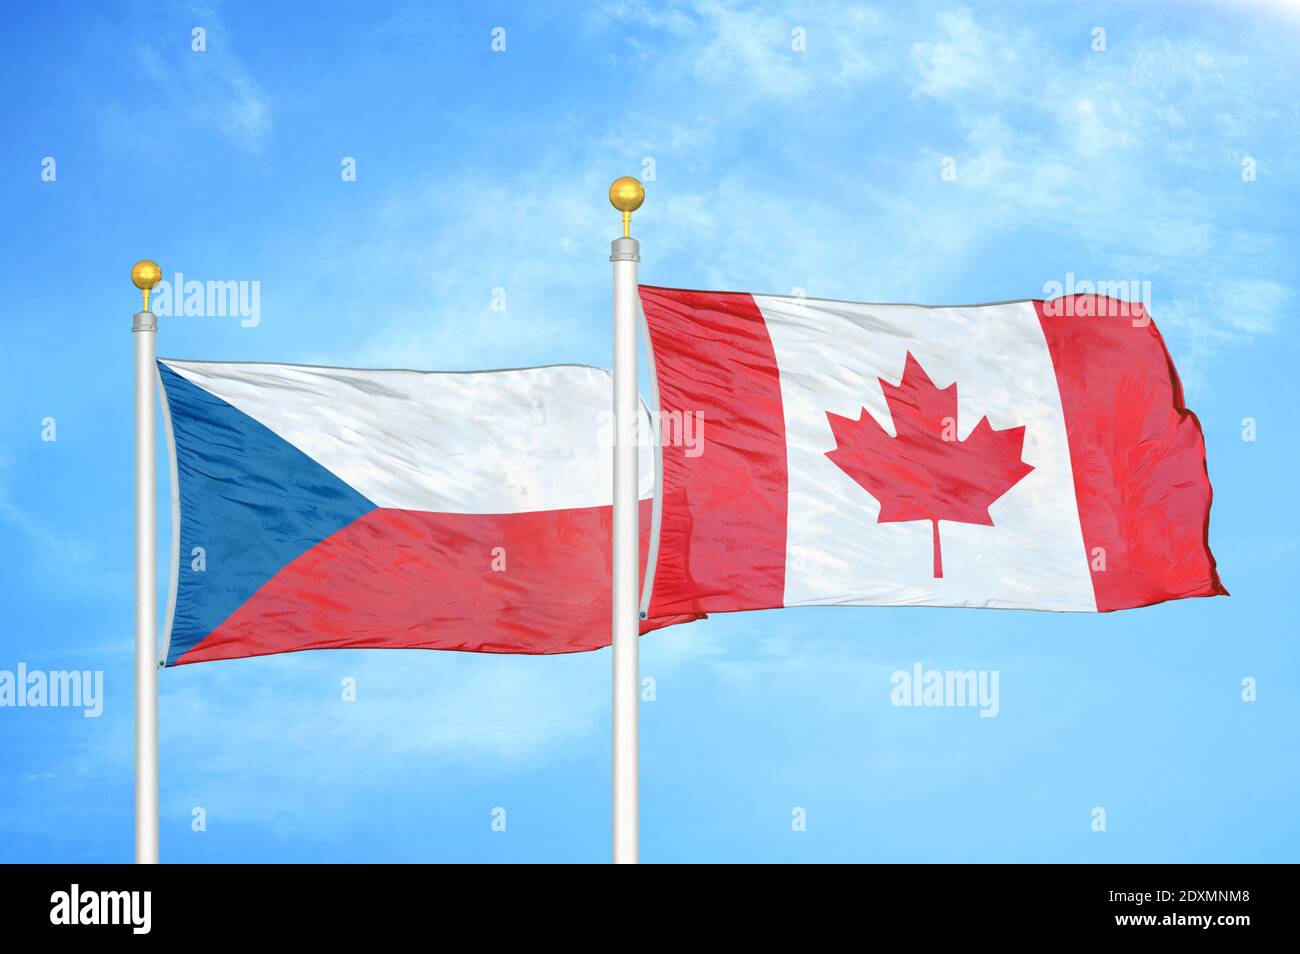 Tschechien und Kanada zwei Flaggen auf Fahnenmasten und blau bewölkt Himmel Stockfoto